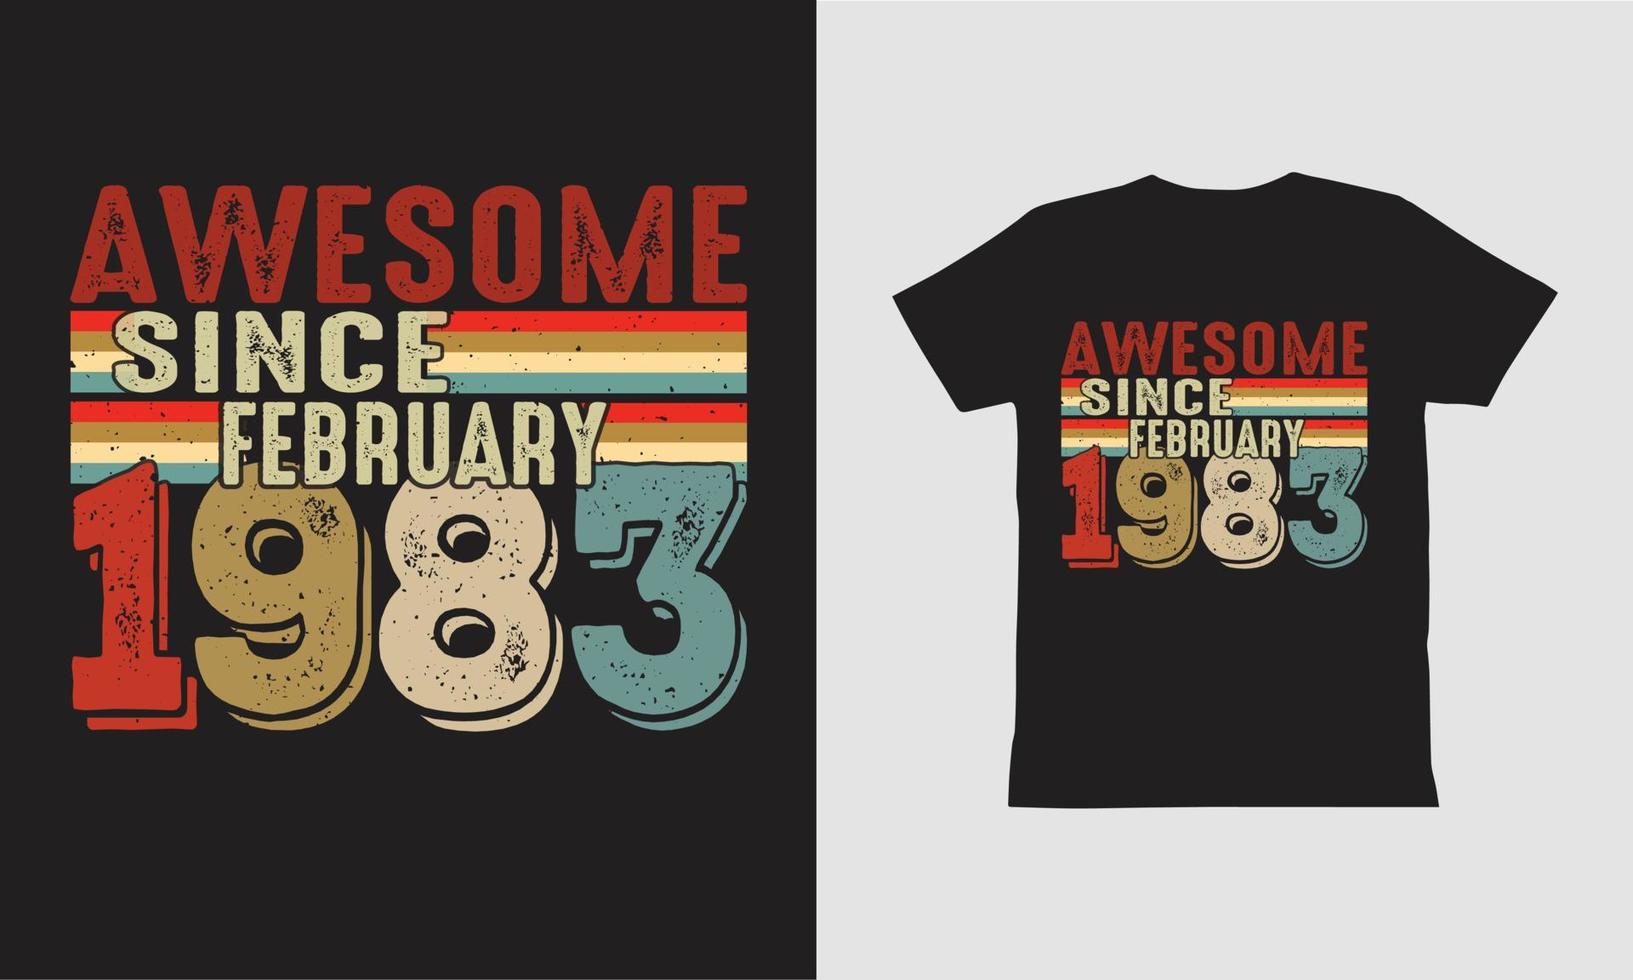 impressionante desde fevereiro de 1983 design de camiseta. vetor